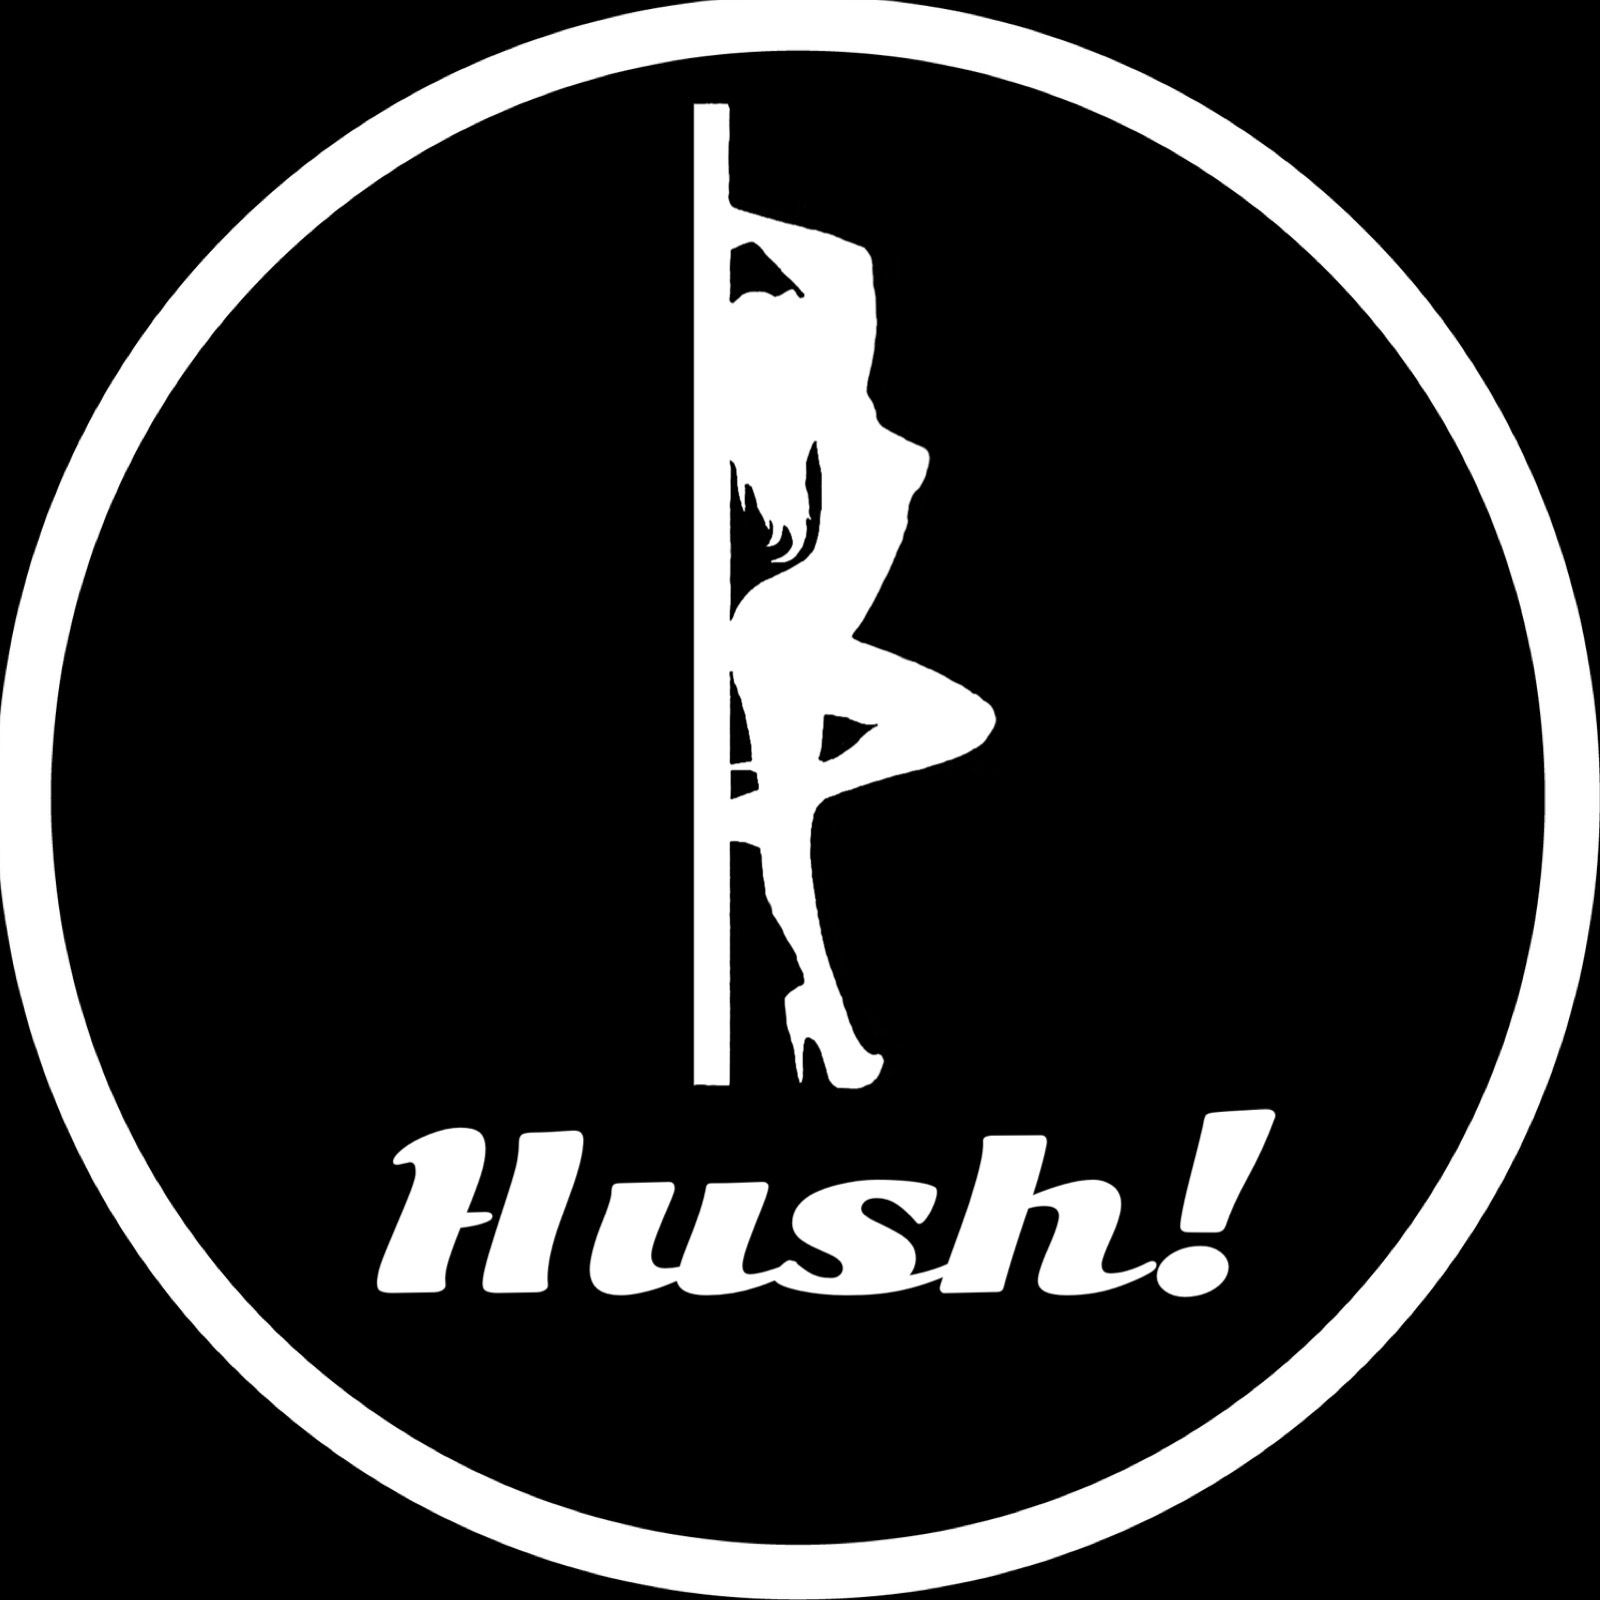 Hush! - Hush! Vol. 60- One on One with Goddess Soria